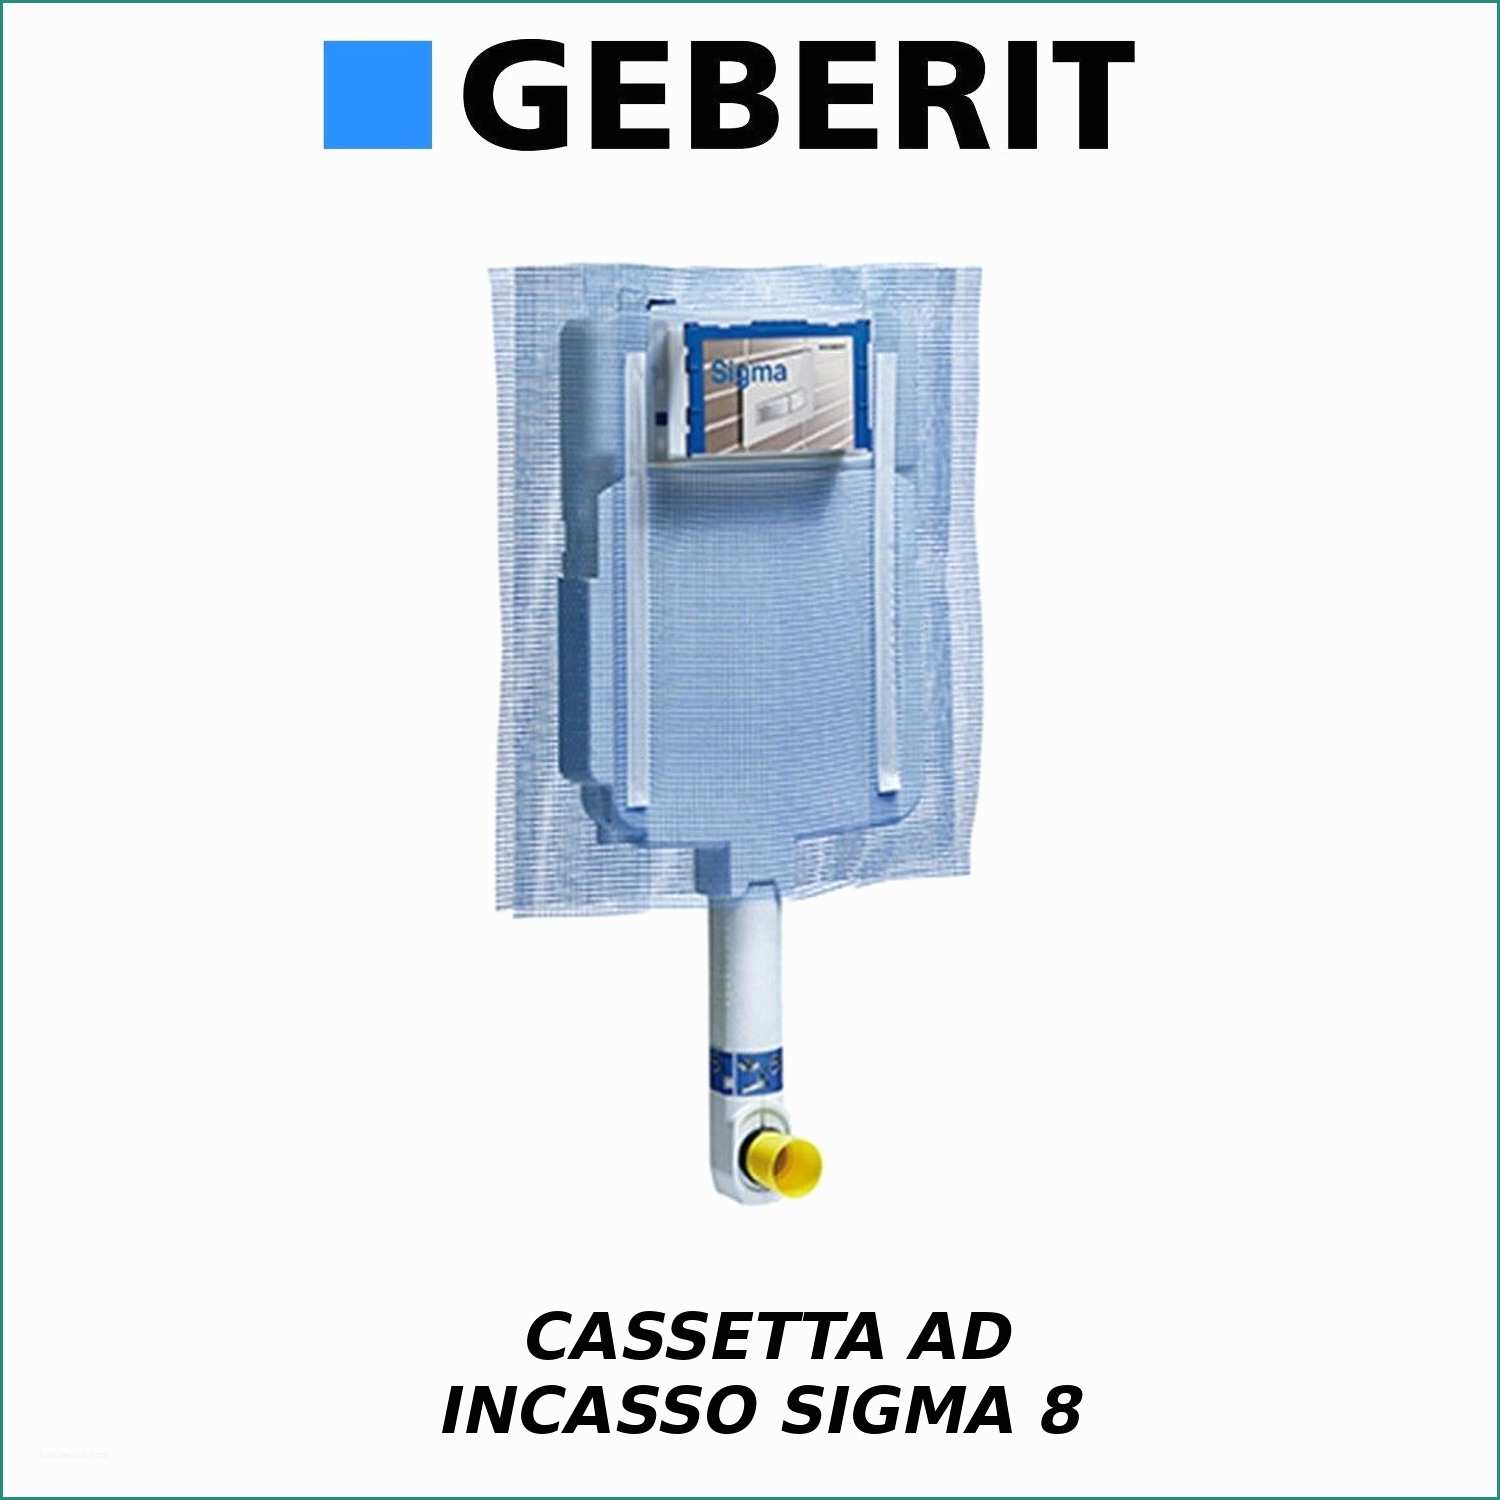 Cassetta Wc Esterna Geberit E Prezzo Kit Pleto Cassetta Wc Incasso Geberit Con Placca ando 2